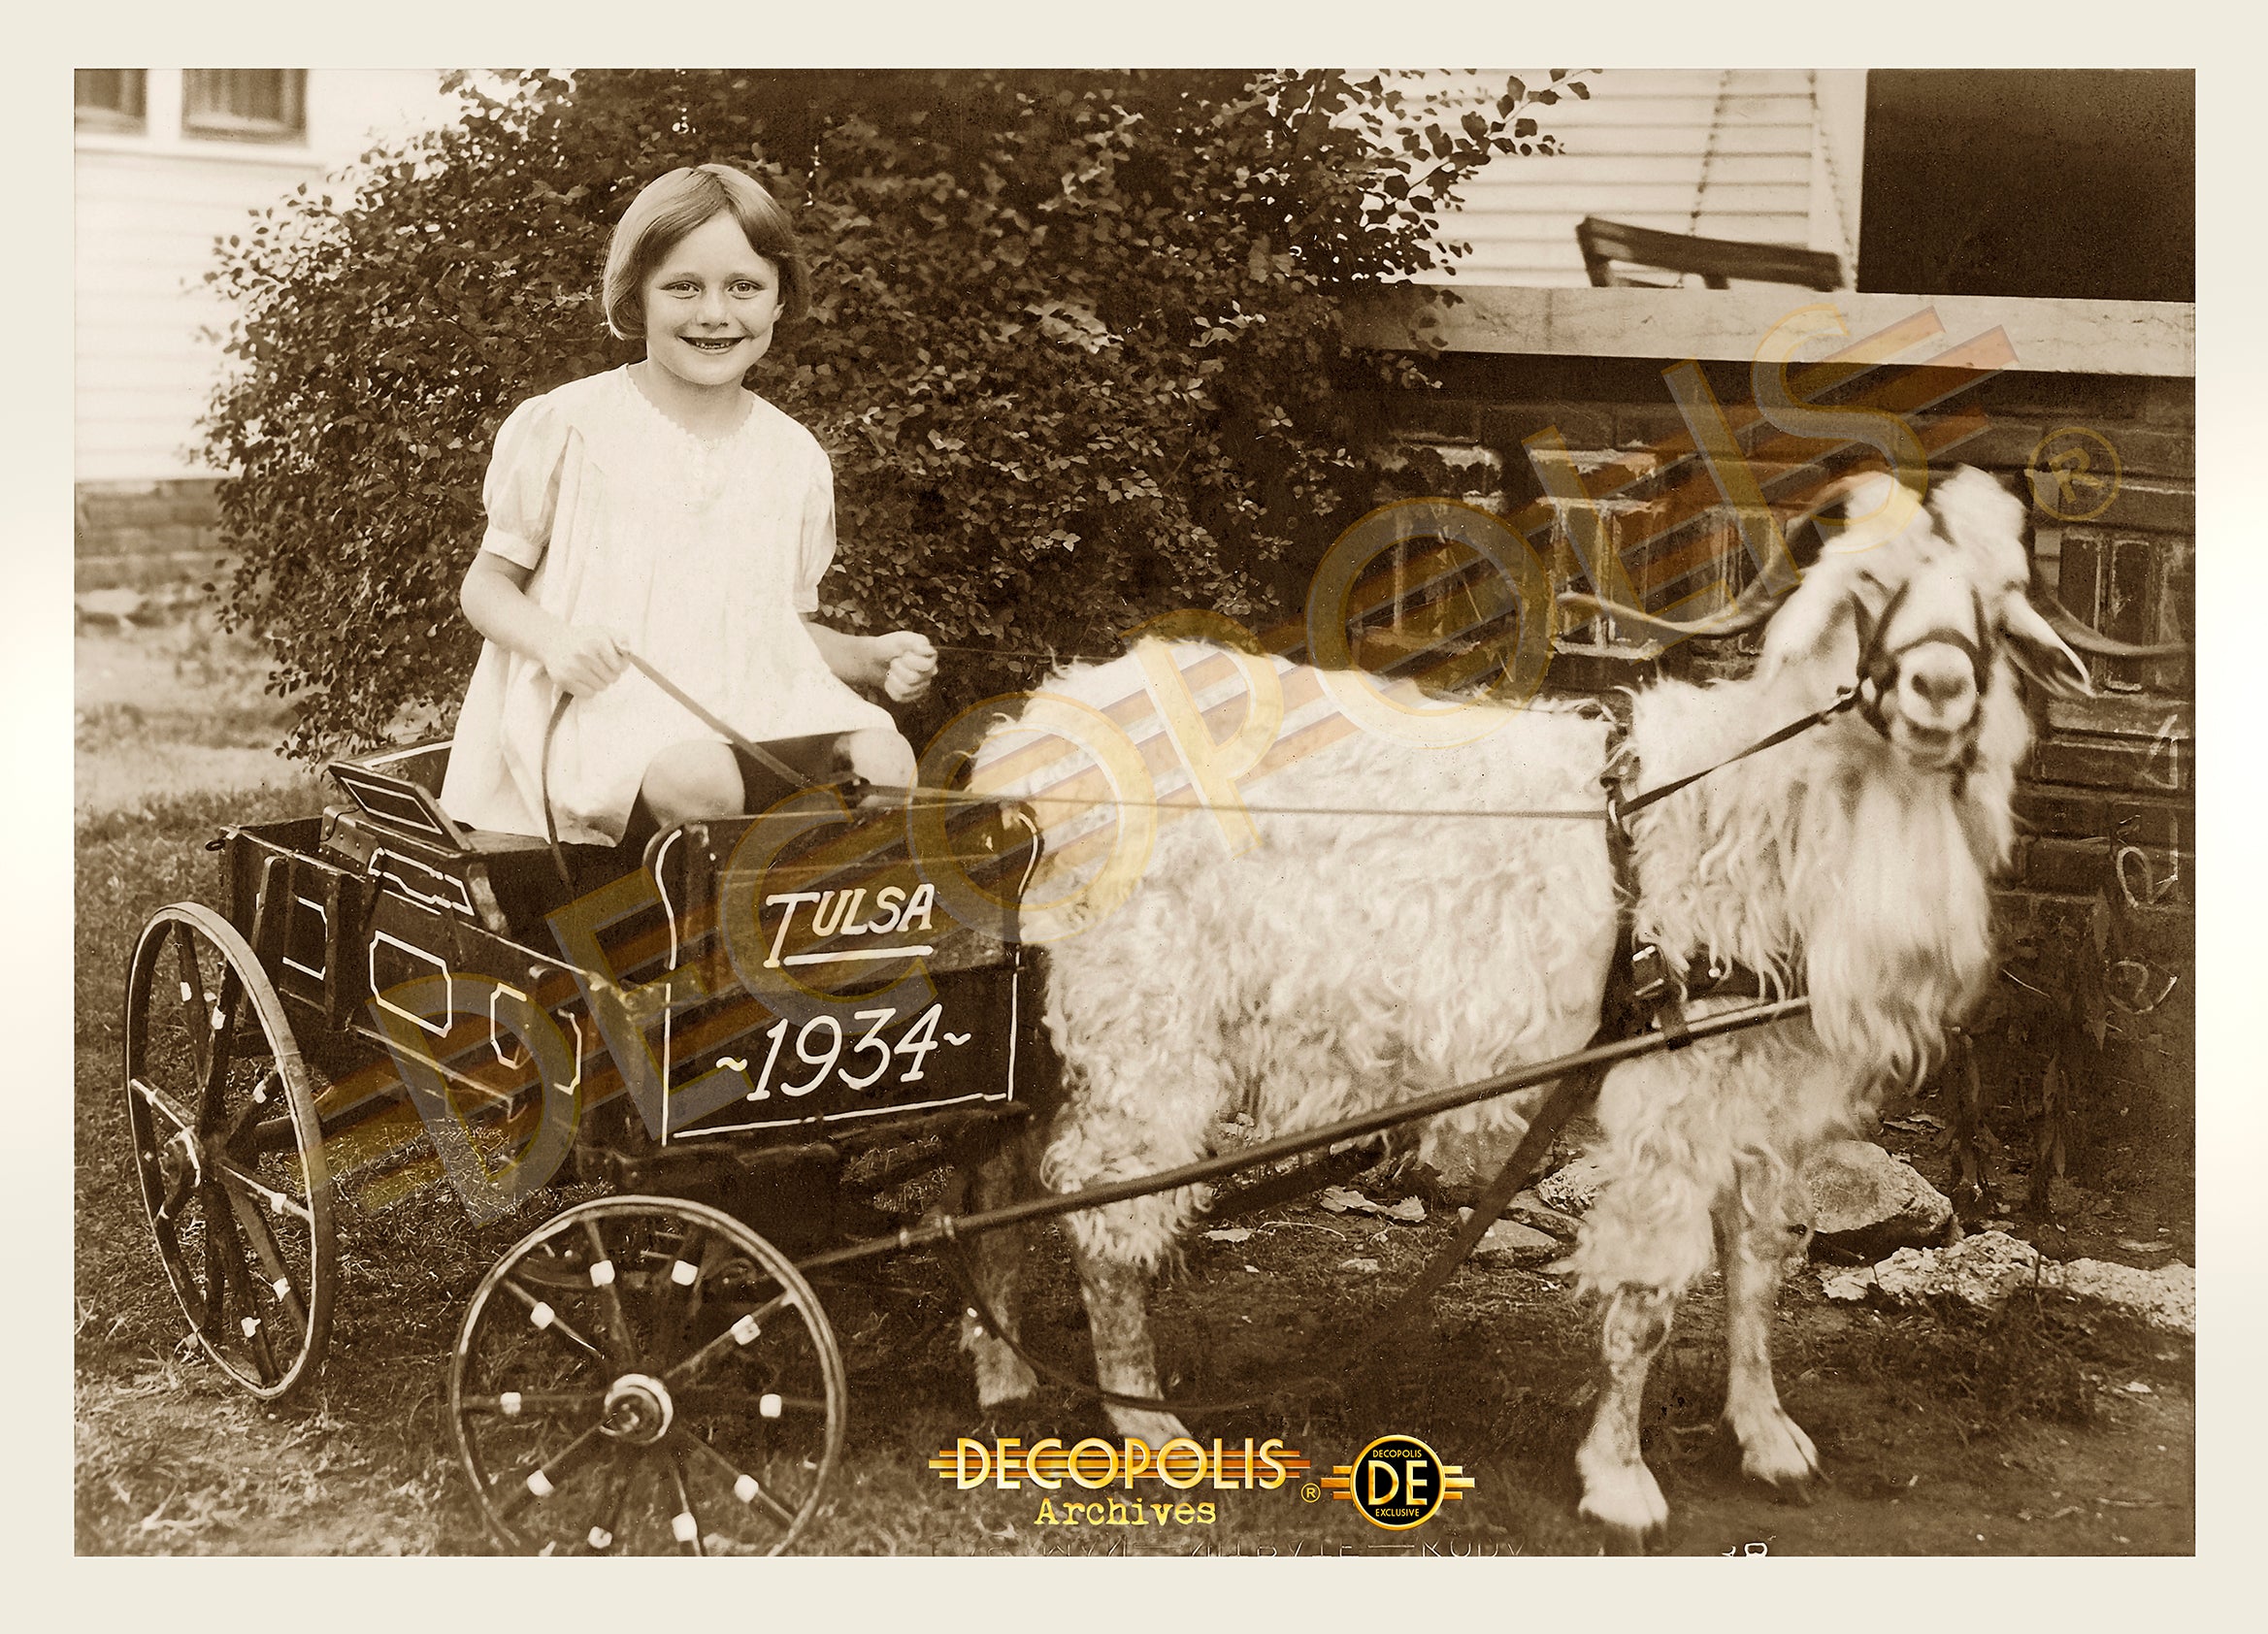 Goat Cart Girl en wm sm .jpg__PID:083456e5-f840-4add-8d5b-5d72f1eb350e